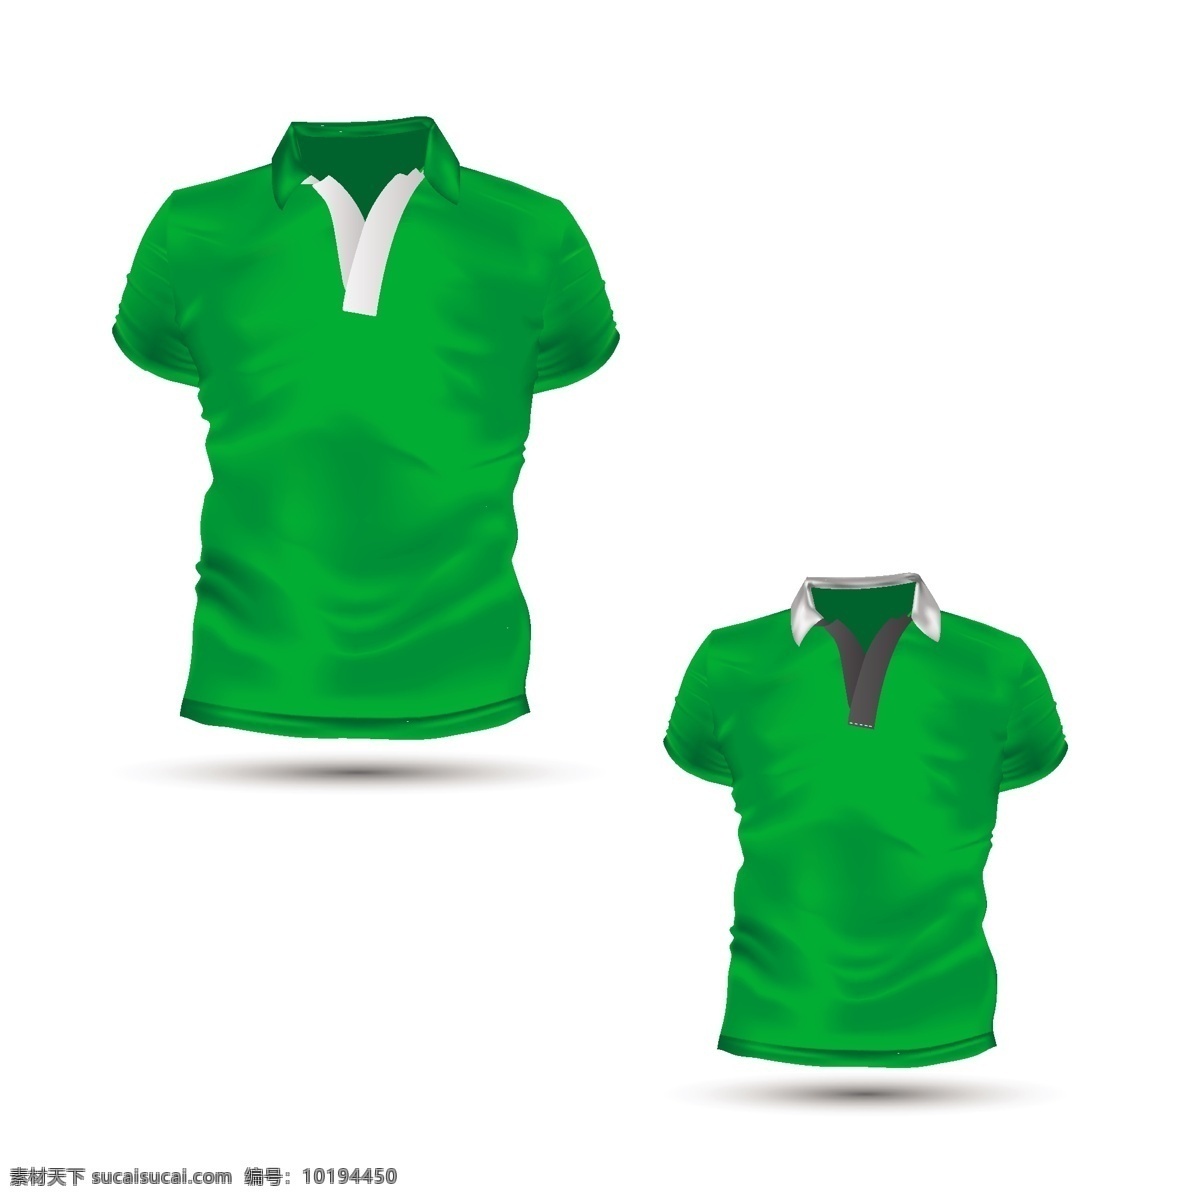 绿色t恤模板 背景 时尚 绿色 模板 衬衫 绿色背景 服装 t恤 时尚设计 背景设计 前面 休闲 白色